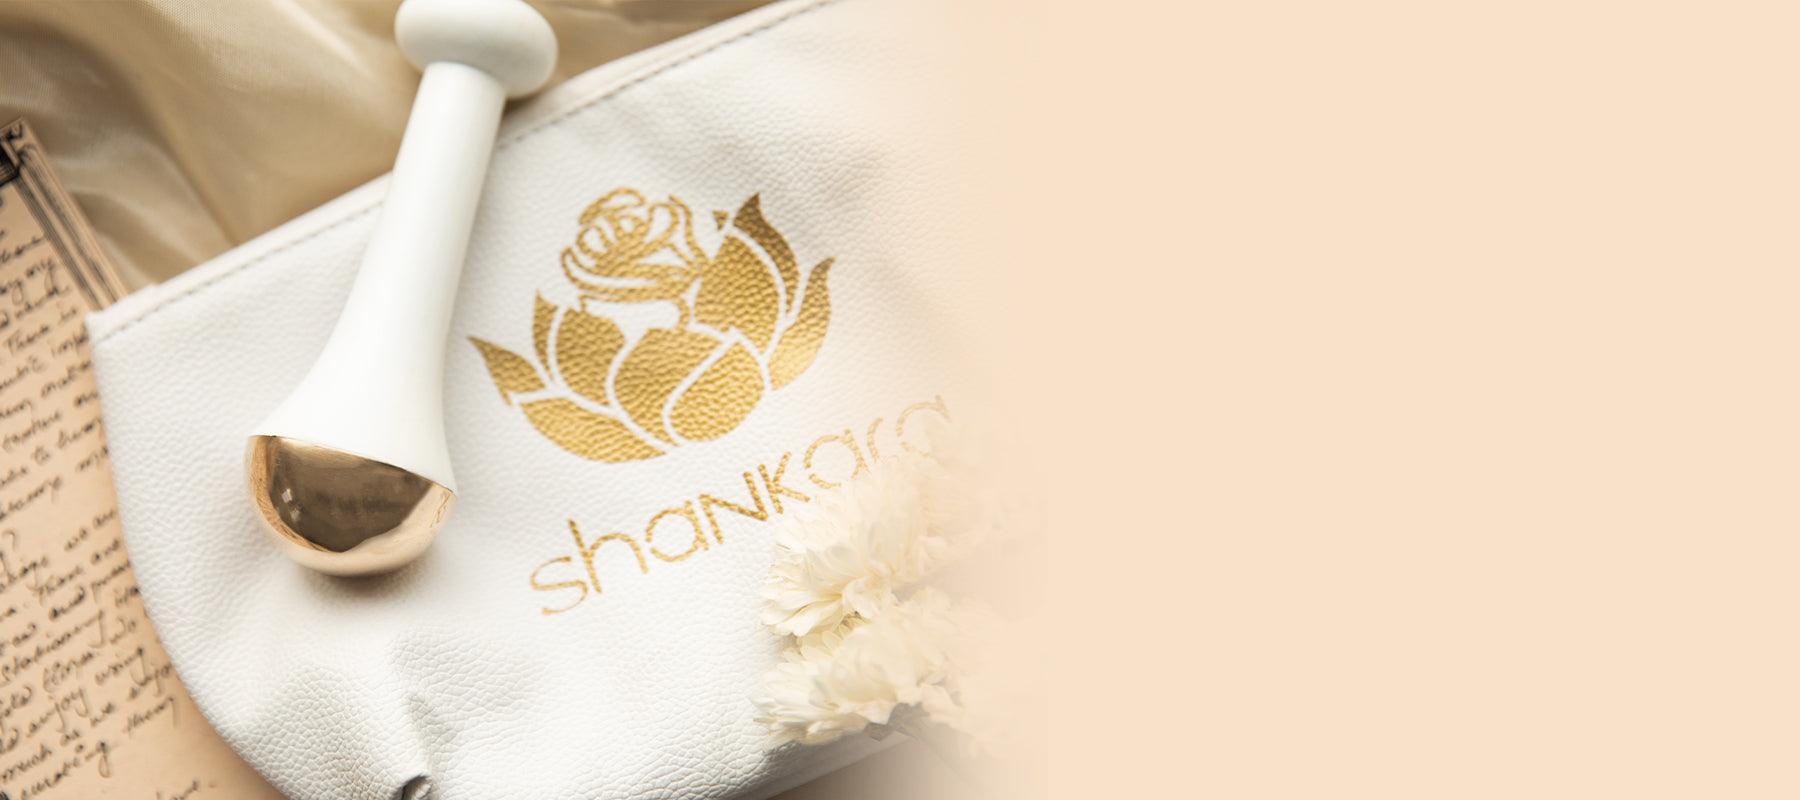 Specialty - Shankara India